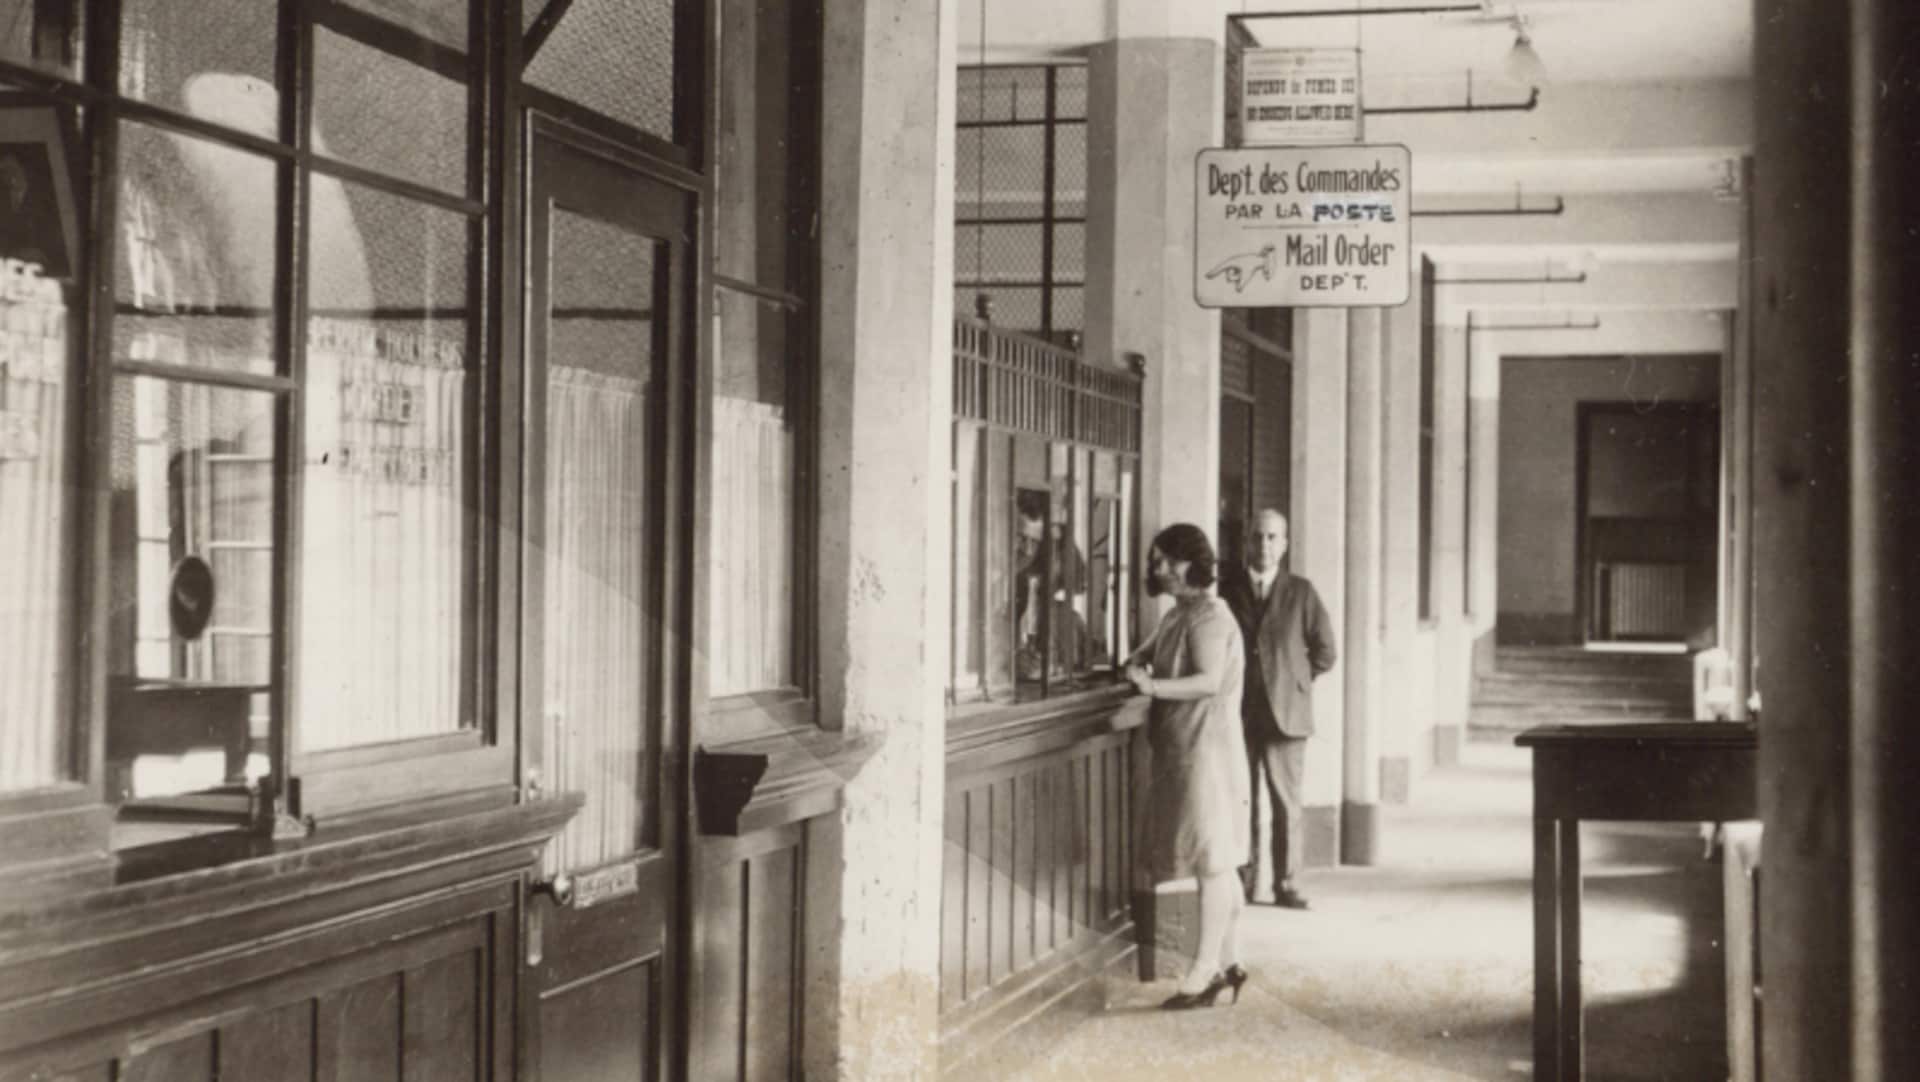 On aperçoit une femme à un comptoir, au bout d'un corridor. Une affiche indique qu'il s'agit du département des commandes par la poste. 